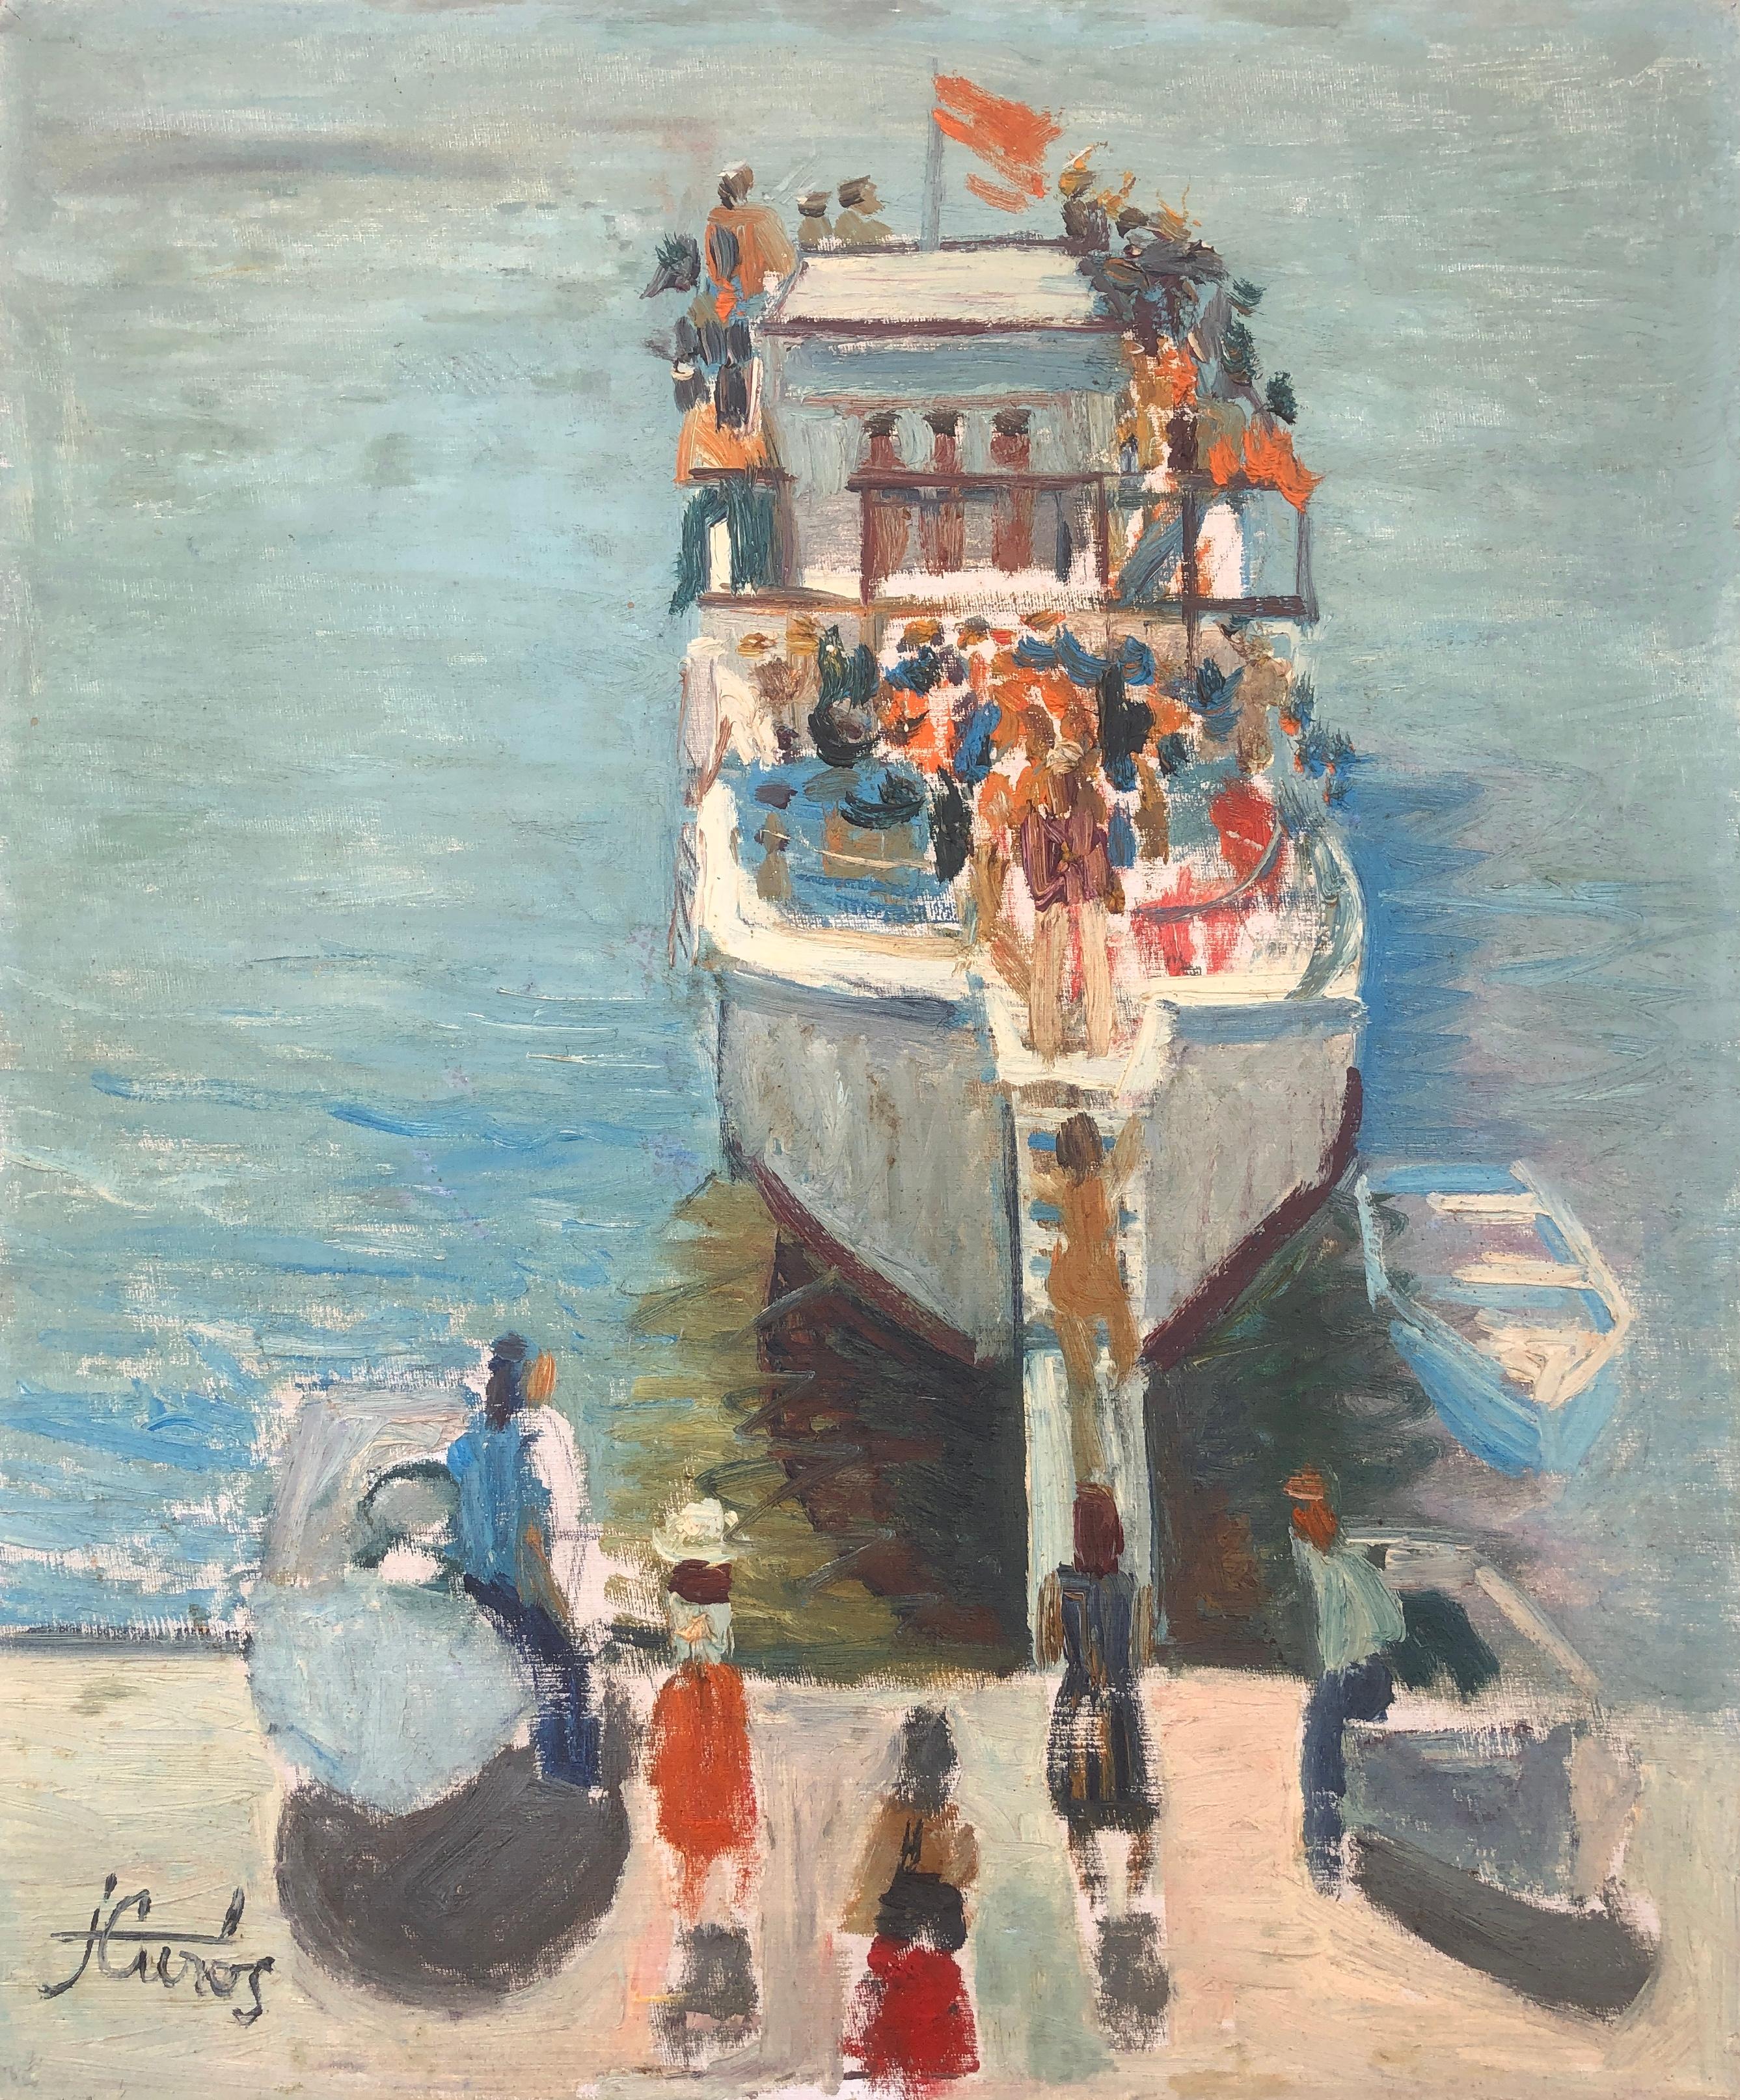 Landscape Painting Jordi Curos - The ship peinture à l'huile paysage marin espagnol fauviste